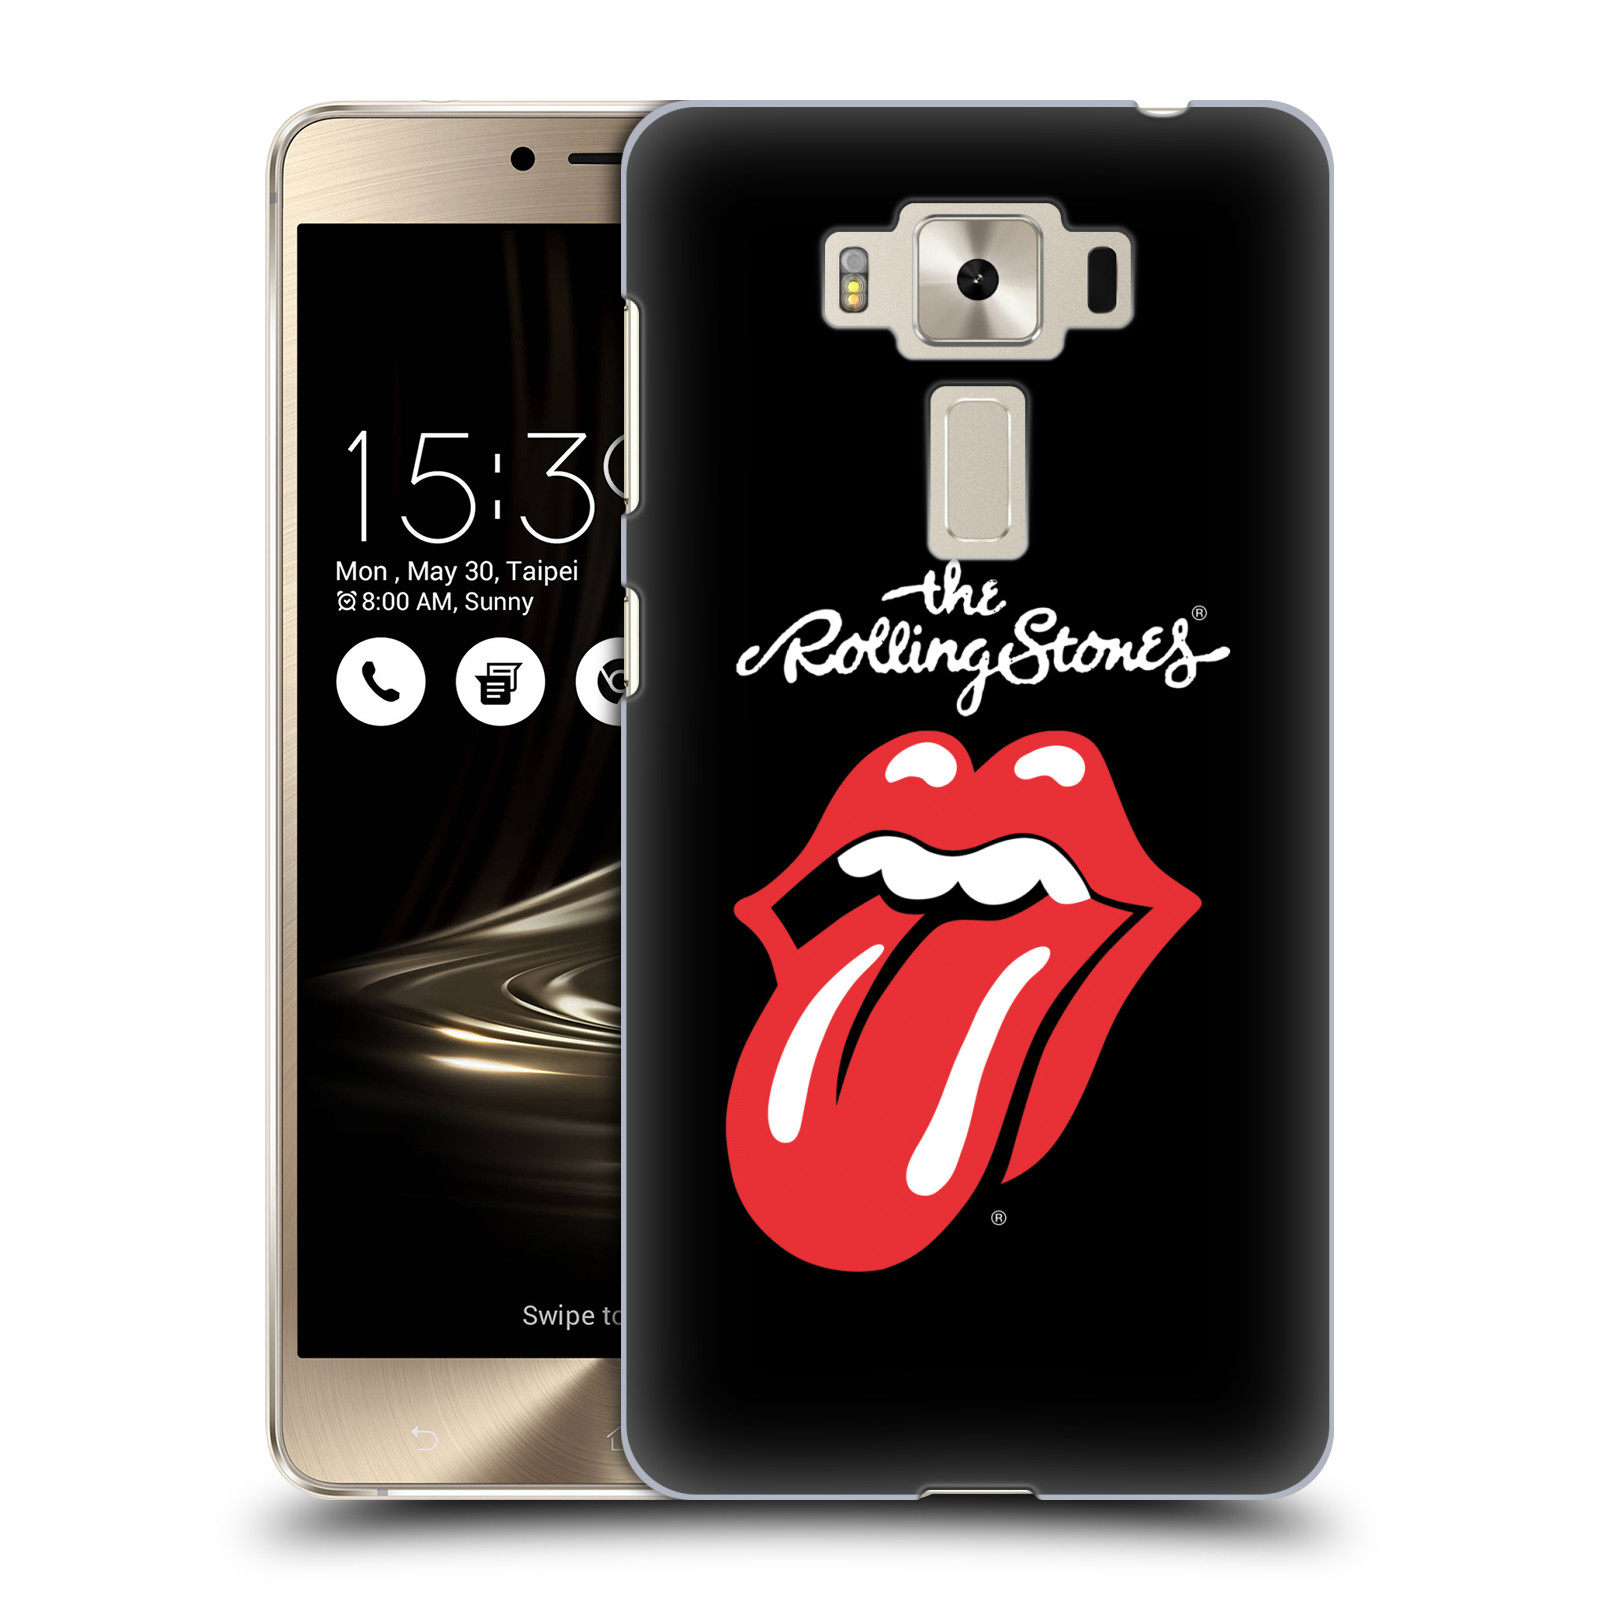 HEAD CASE plastový obal na mobil Asus Zenfone 3 DELUXE ZS550KL rocková skupina Rolling Stones znak černá a červená